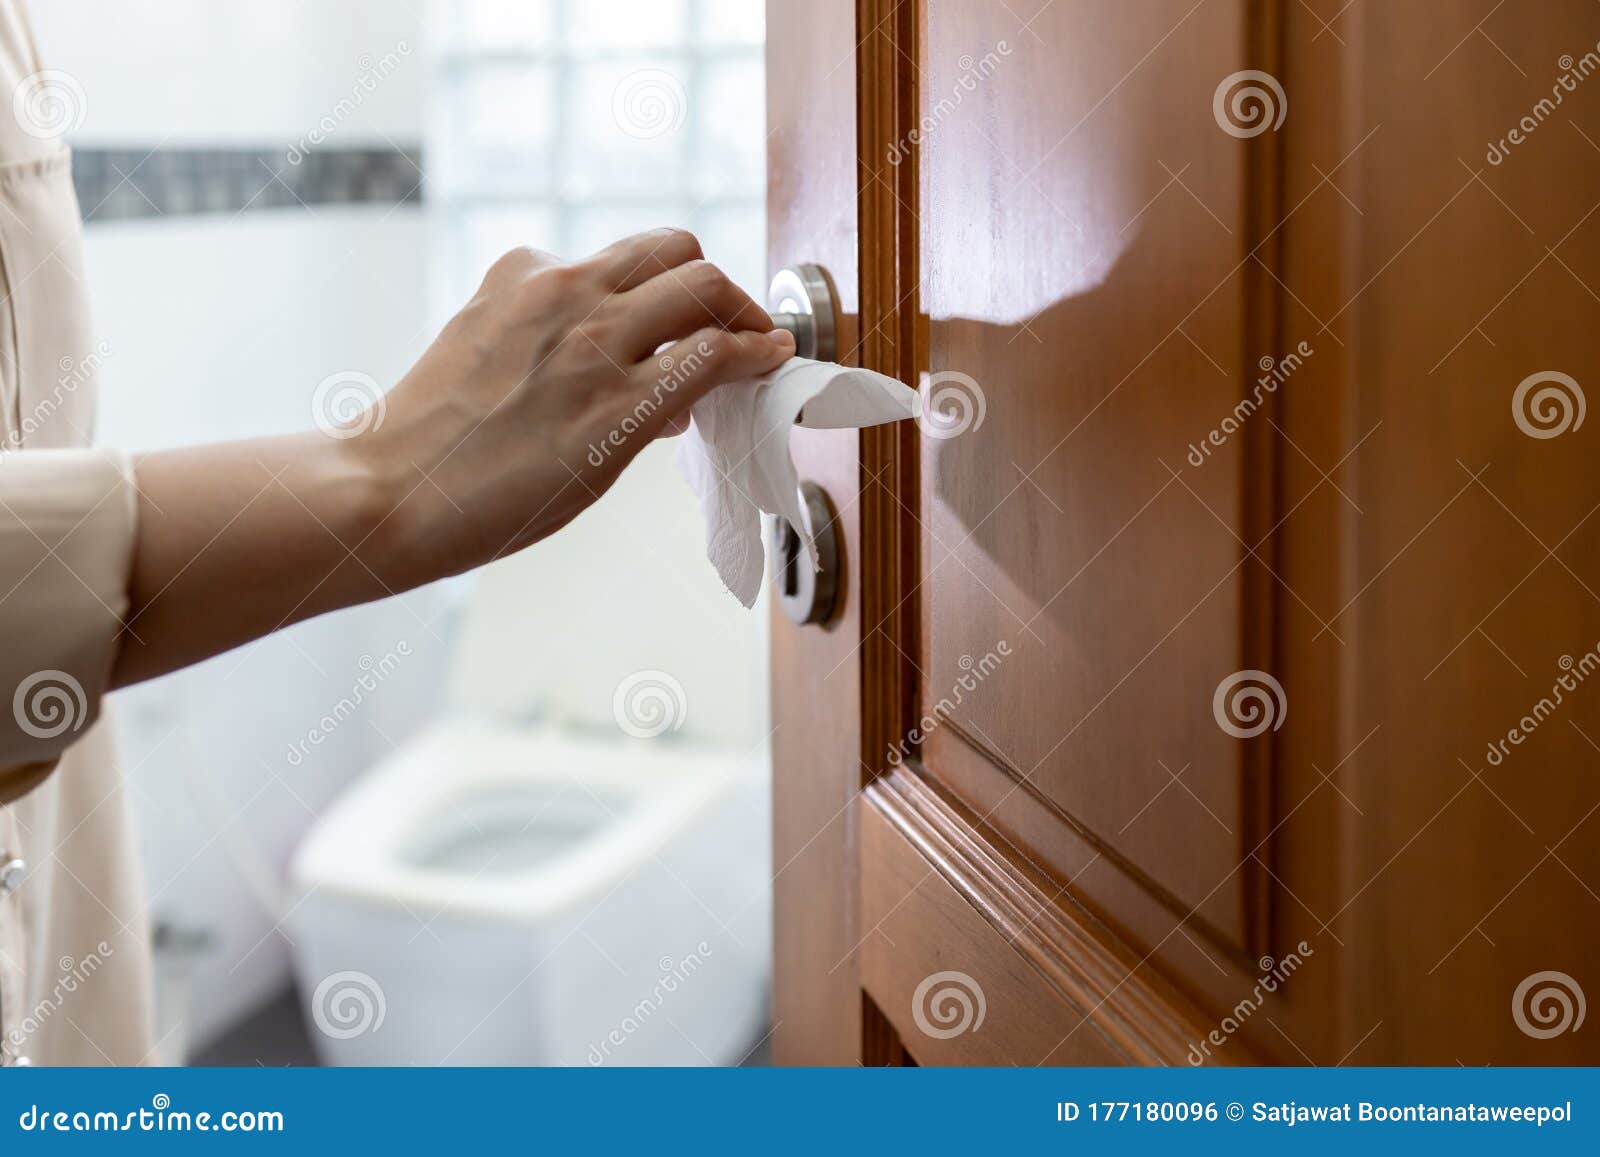 hand with door handle,girl open the bathroom door,woman using tissue paper to touch the door knob instead of hands to prevent